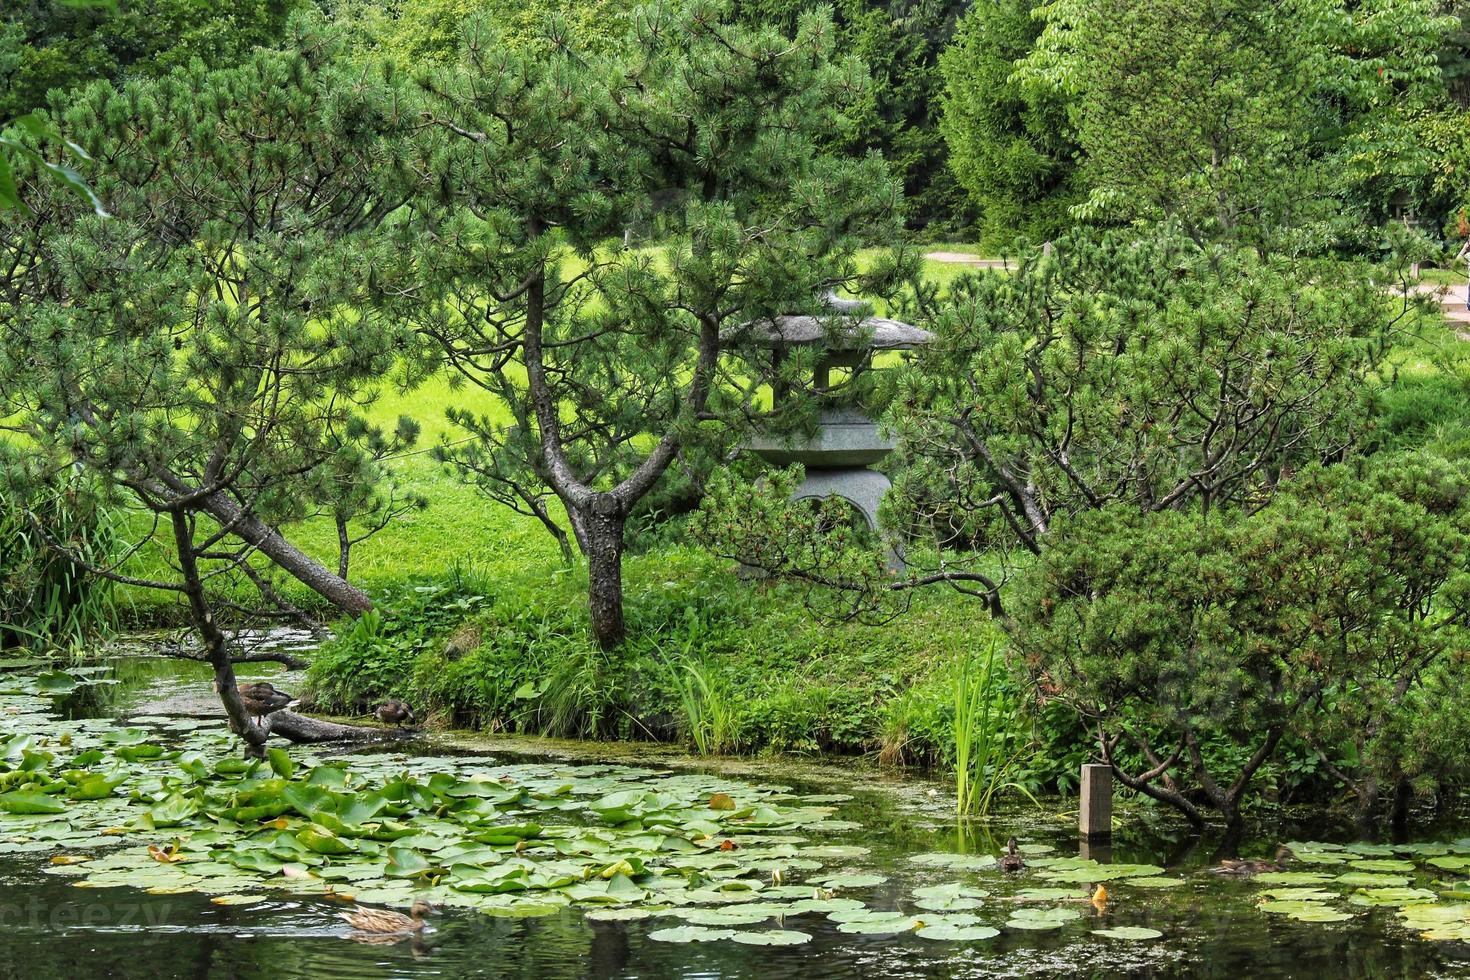 skön landskap se i japansk traditionell botanisk dekorativ trädgård. lugna natur scen av grön sommar sjö damm vatten och pagod lykta. zen, meditation, harmoni begrepp foto